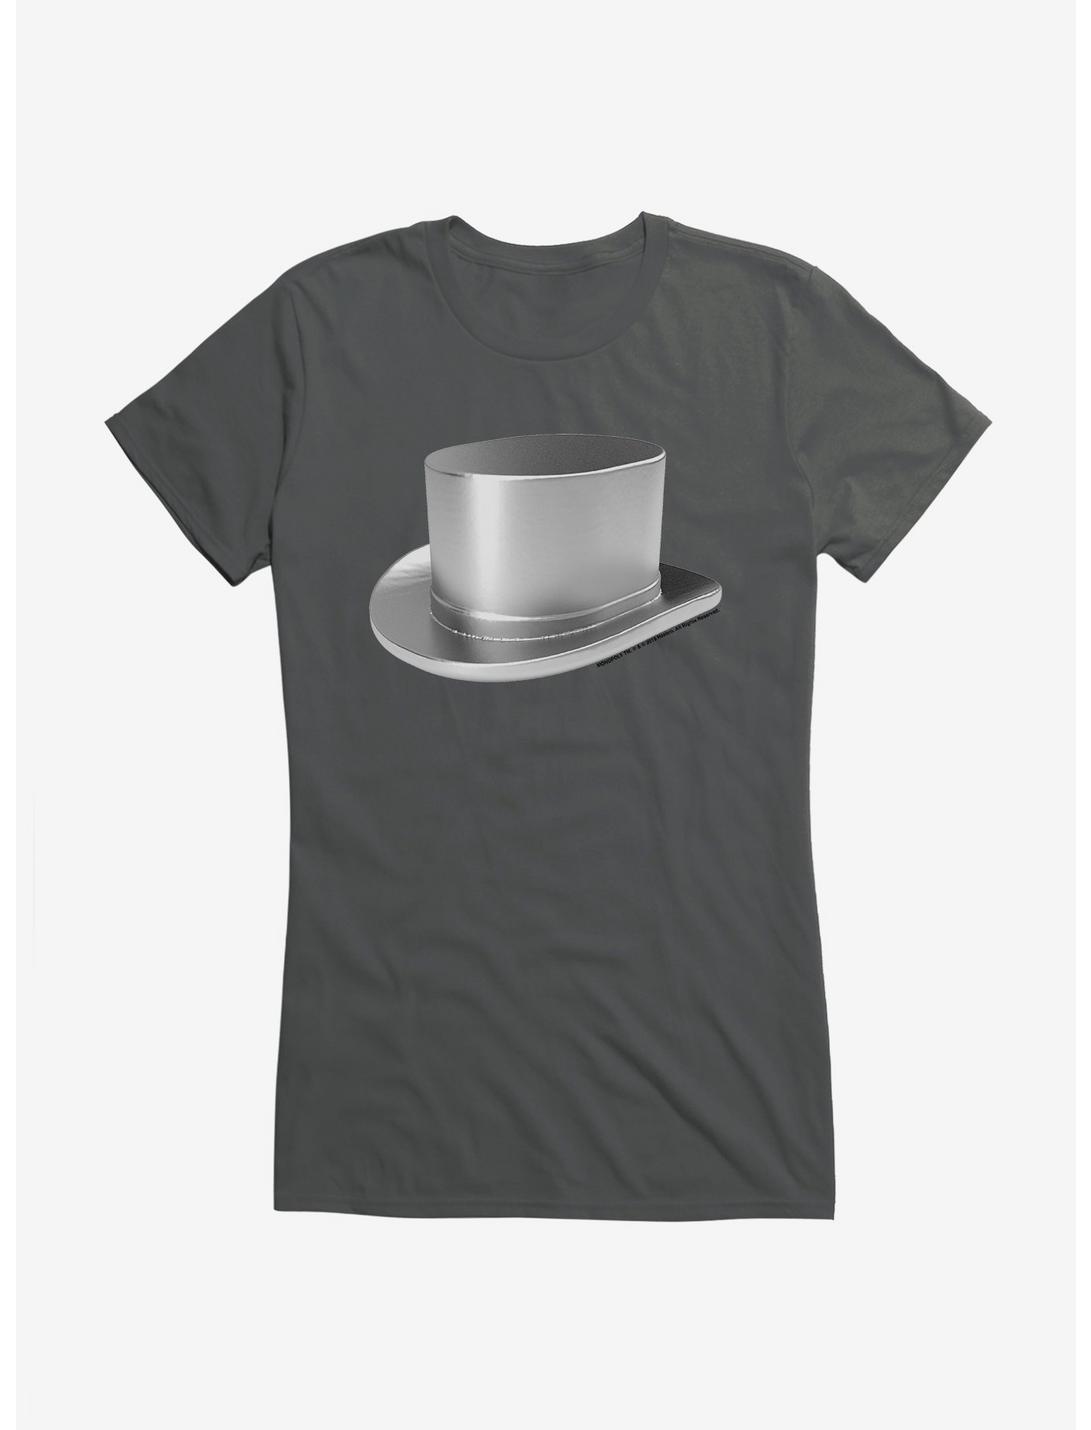 Monopoly Top Hat Token Girls T-Shirt, , hi-res